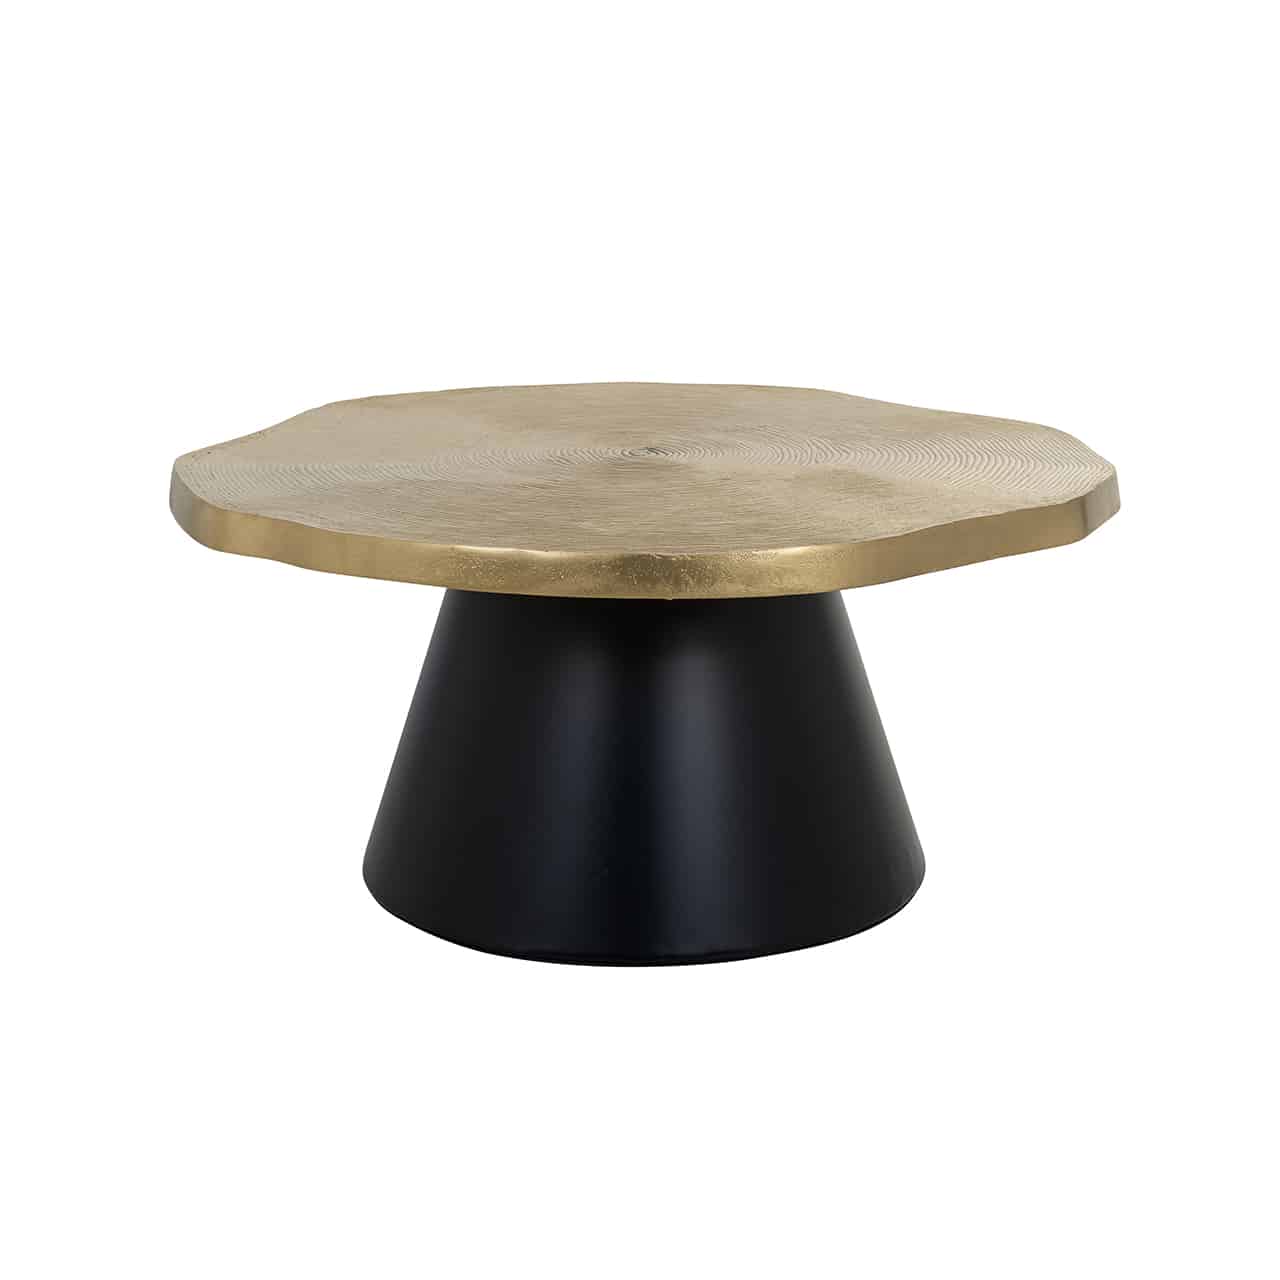 Couchtisch mit einem schwarzen Fuß im Design eines breiten, abgeschnittenen Kegels; darauf eine unregelmäßig runde, matt goldene, etwas dickere  Tischplatte.